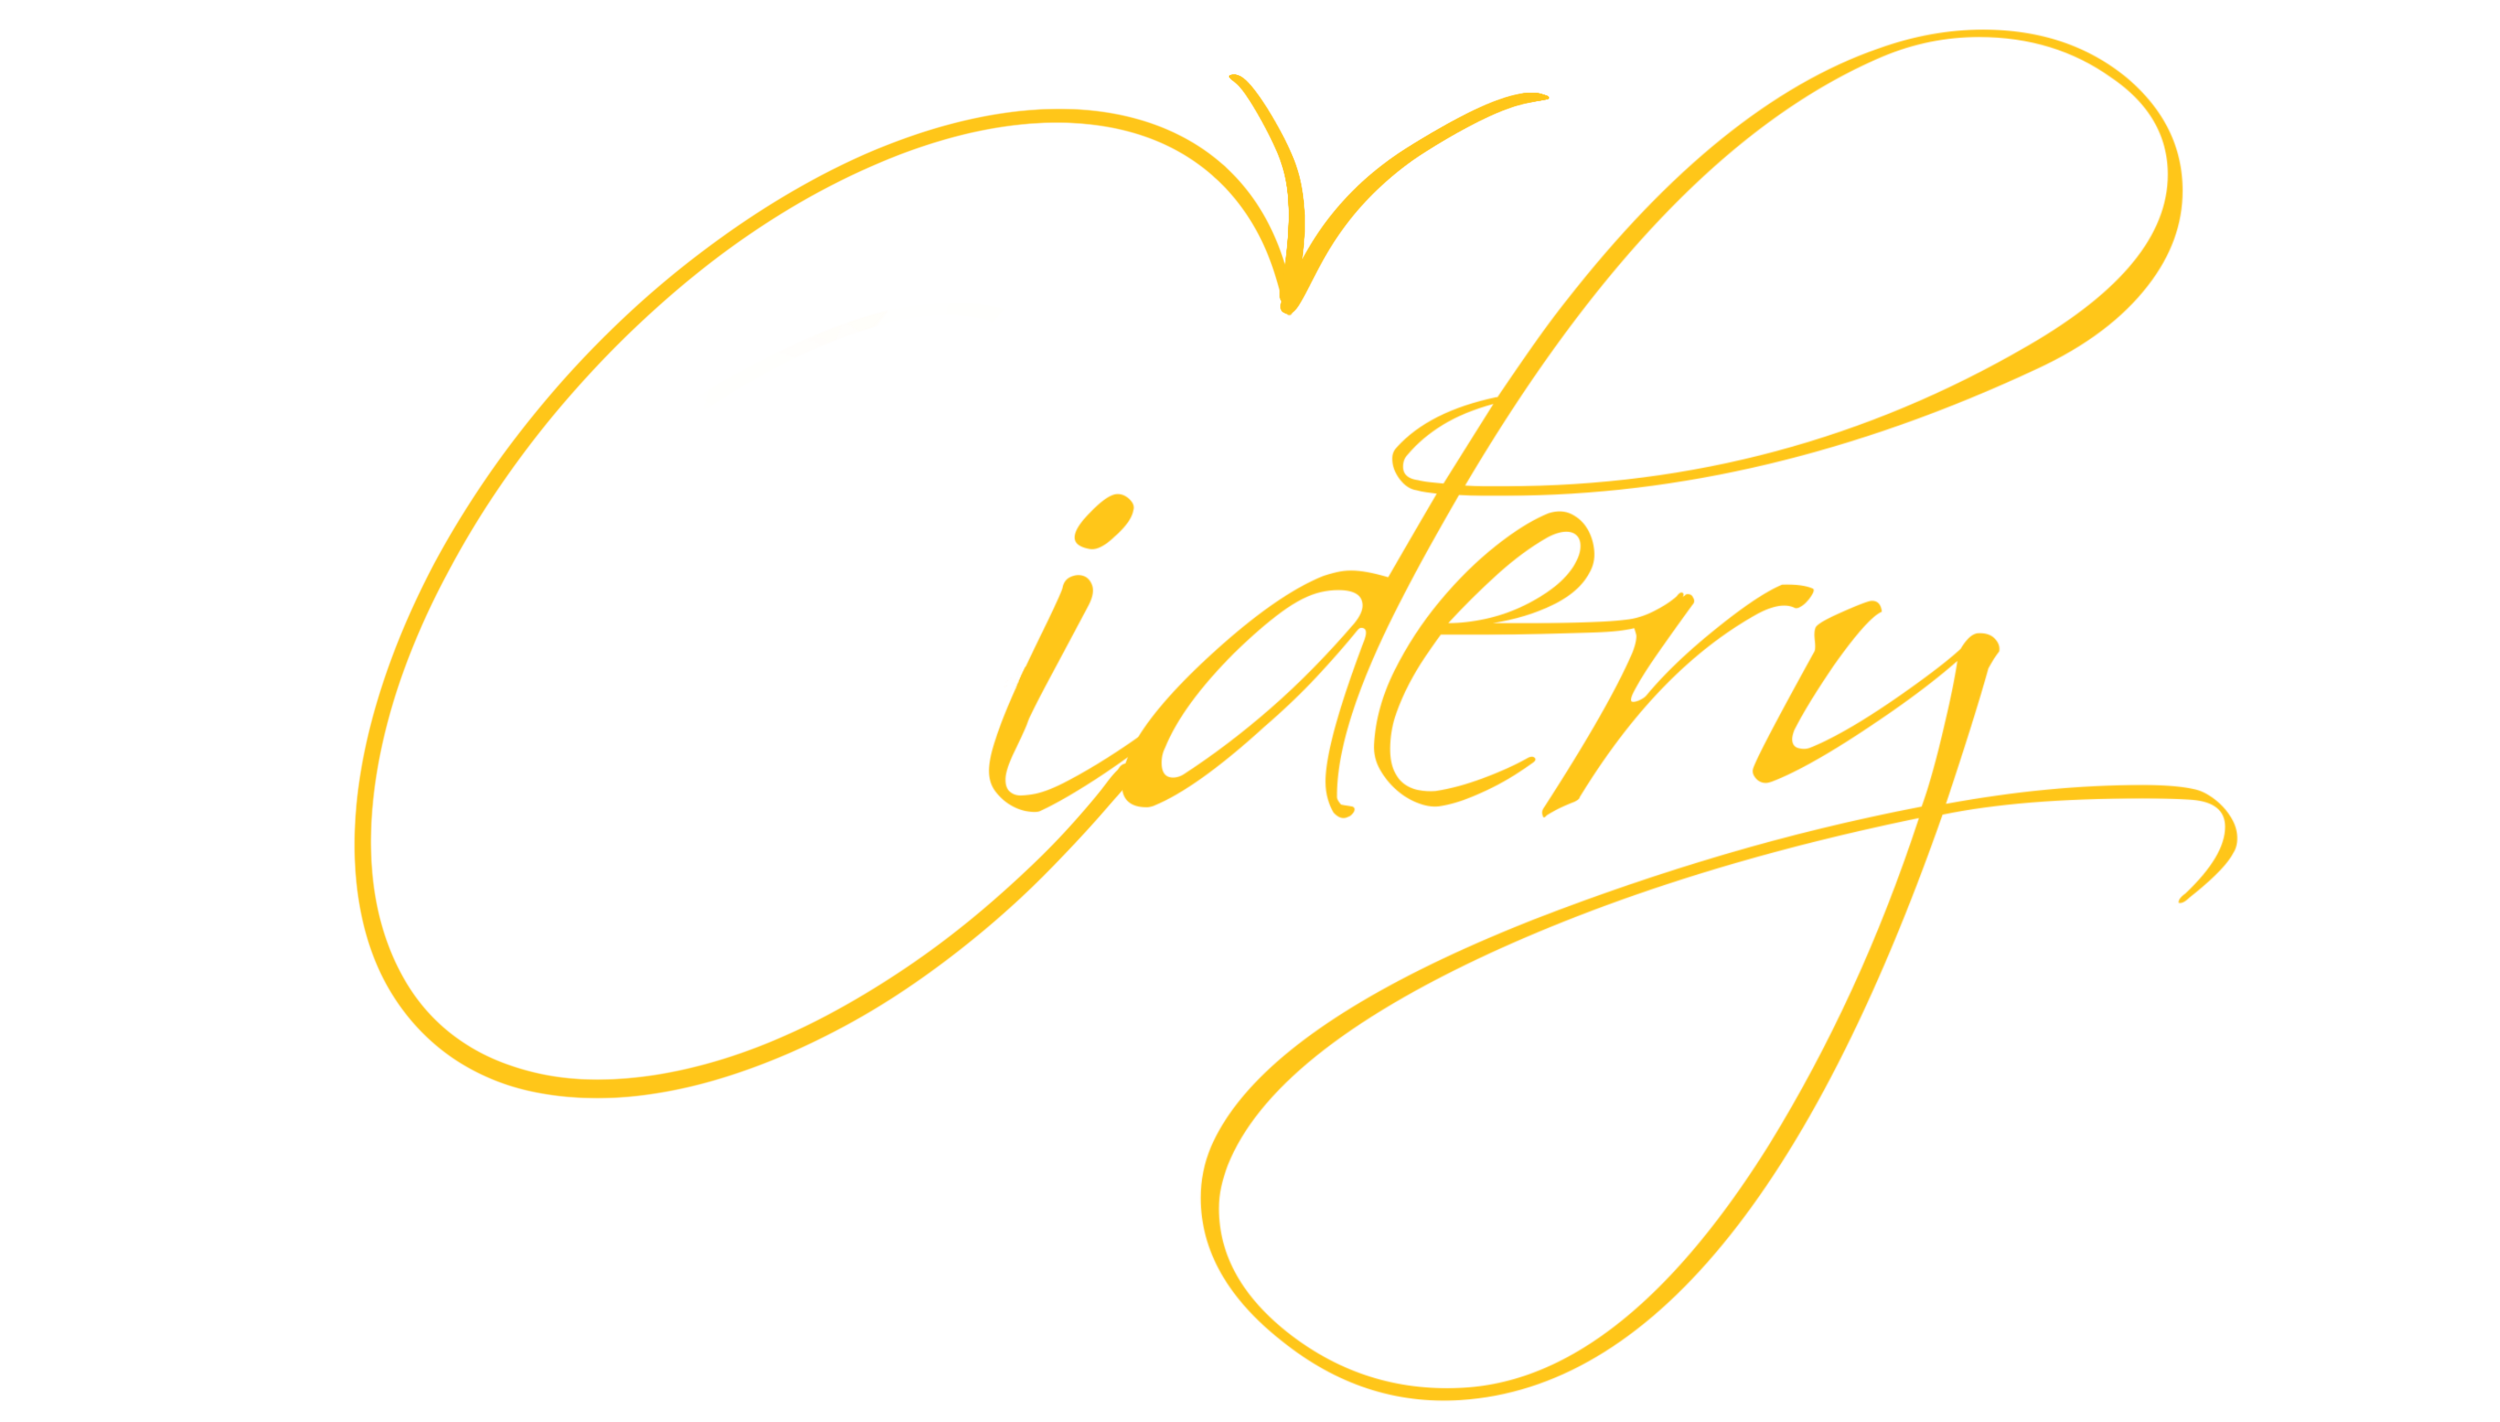 Branch Bender Cidery